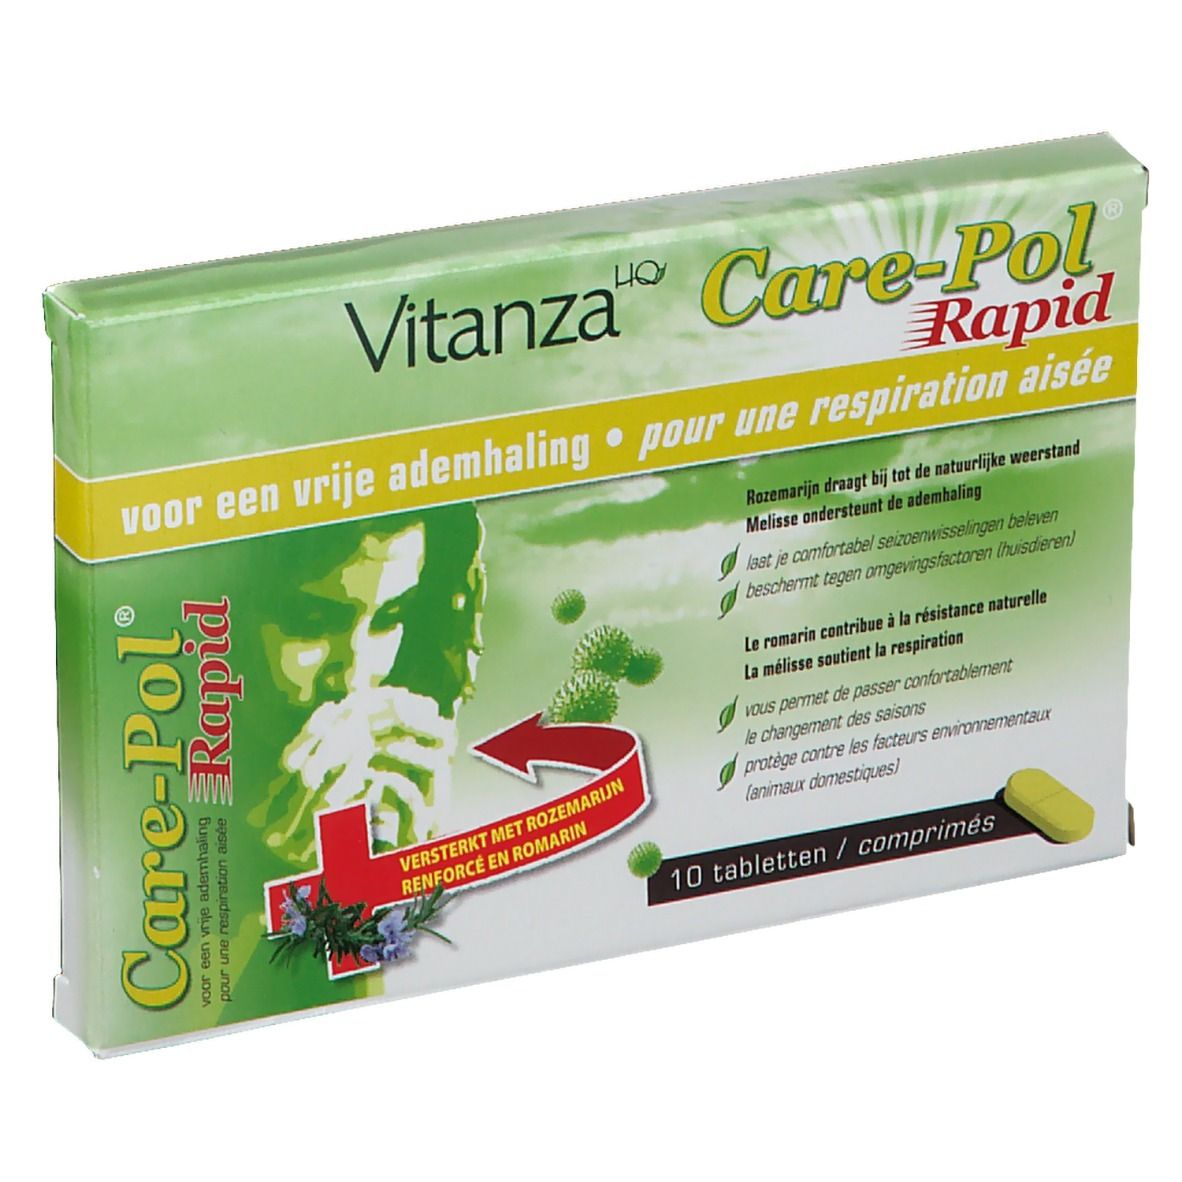 Vitanza HQ Care-Pol® Rapid